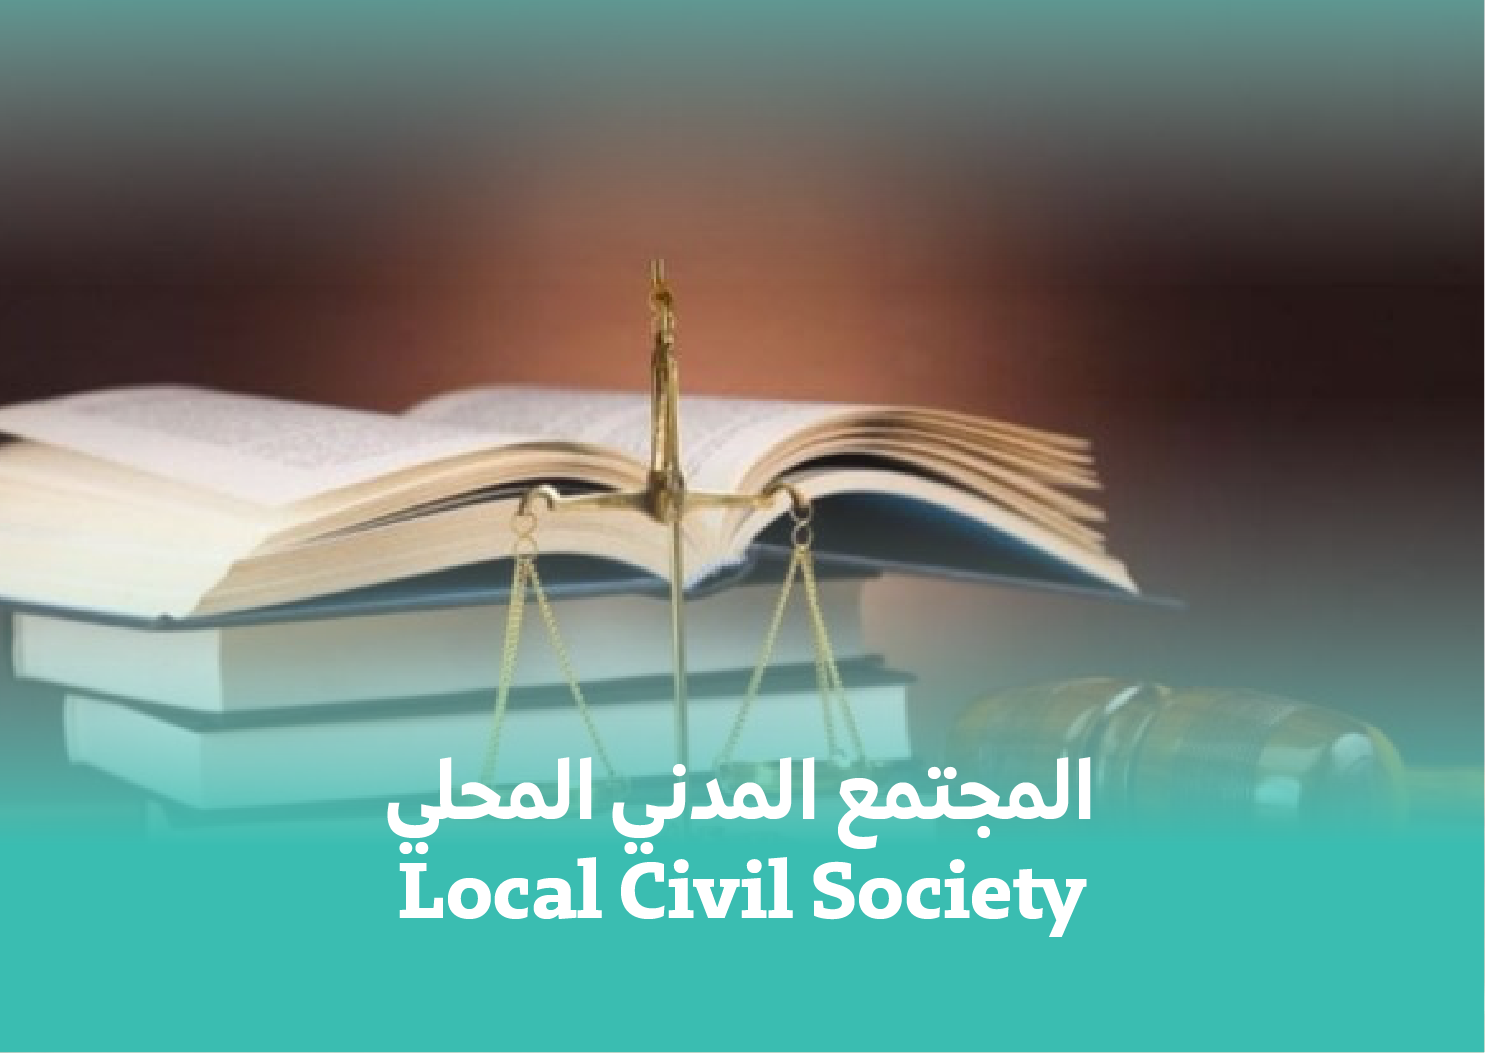  المجتمع المدني المحلي